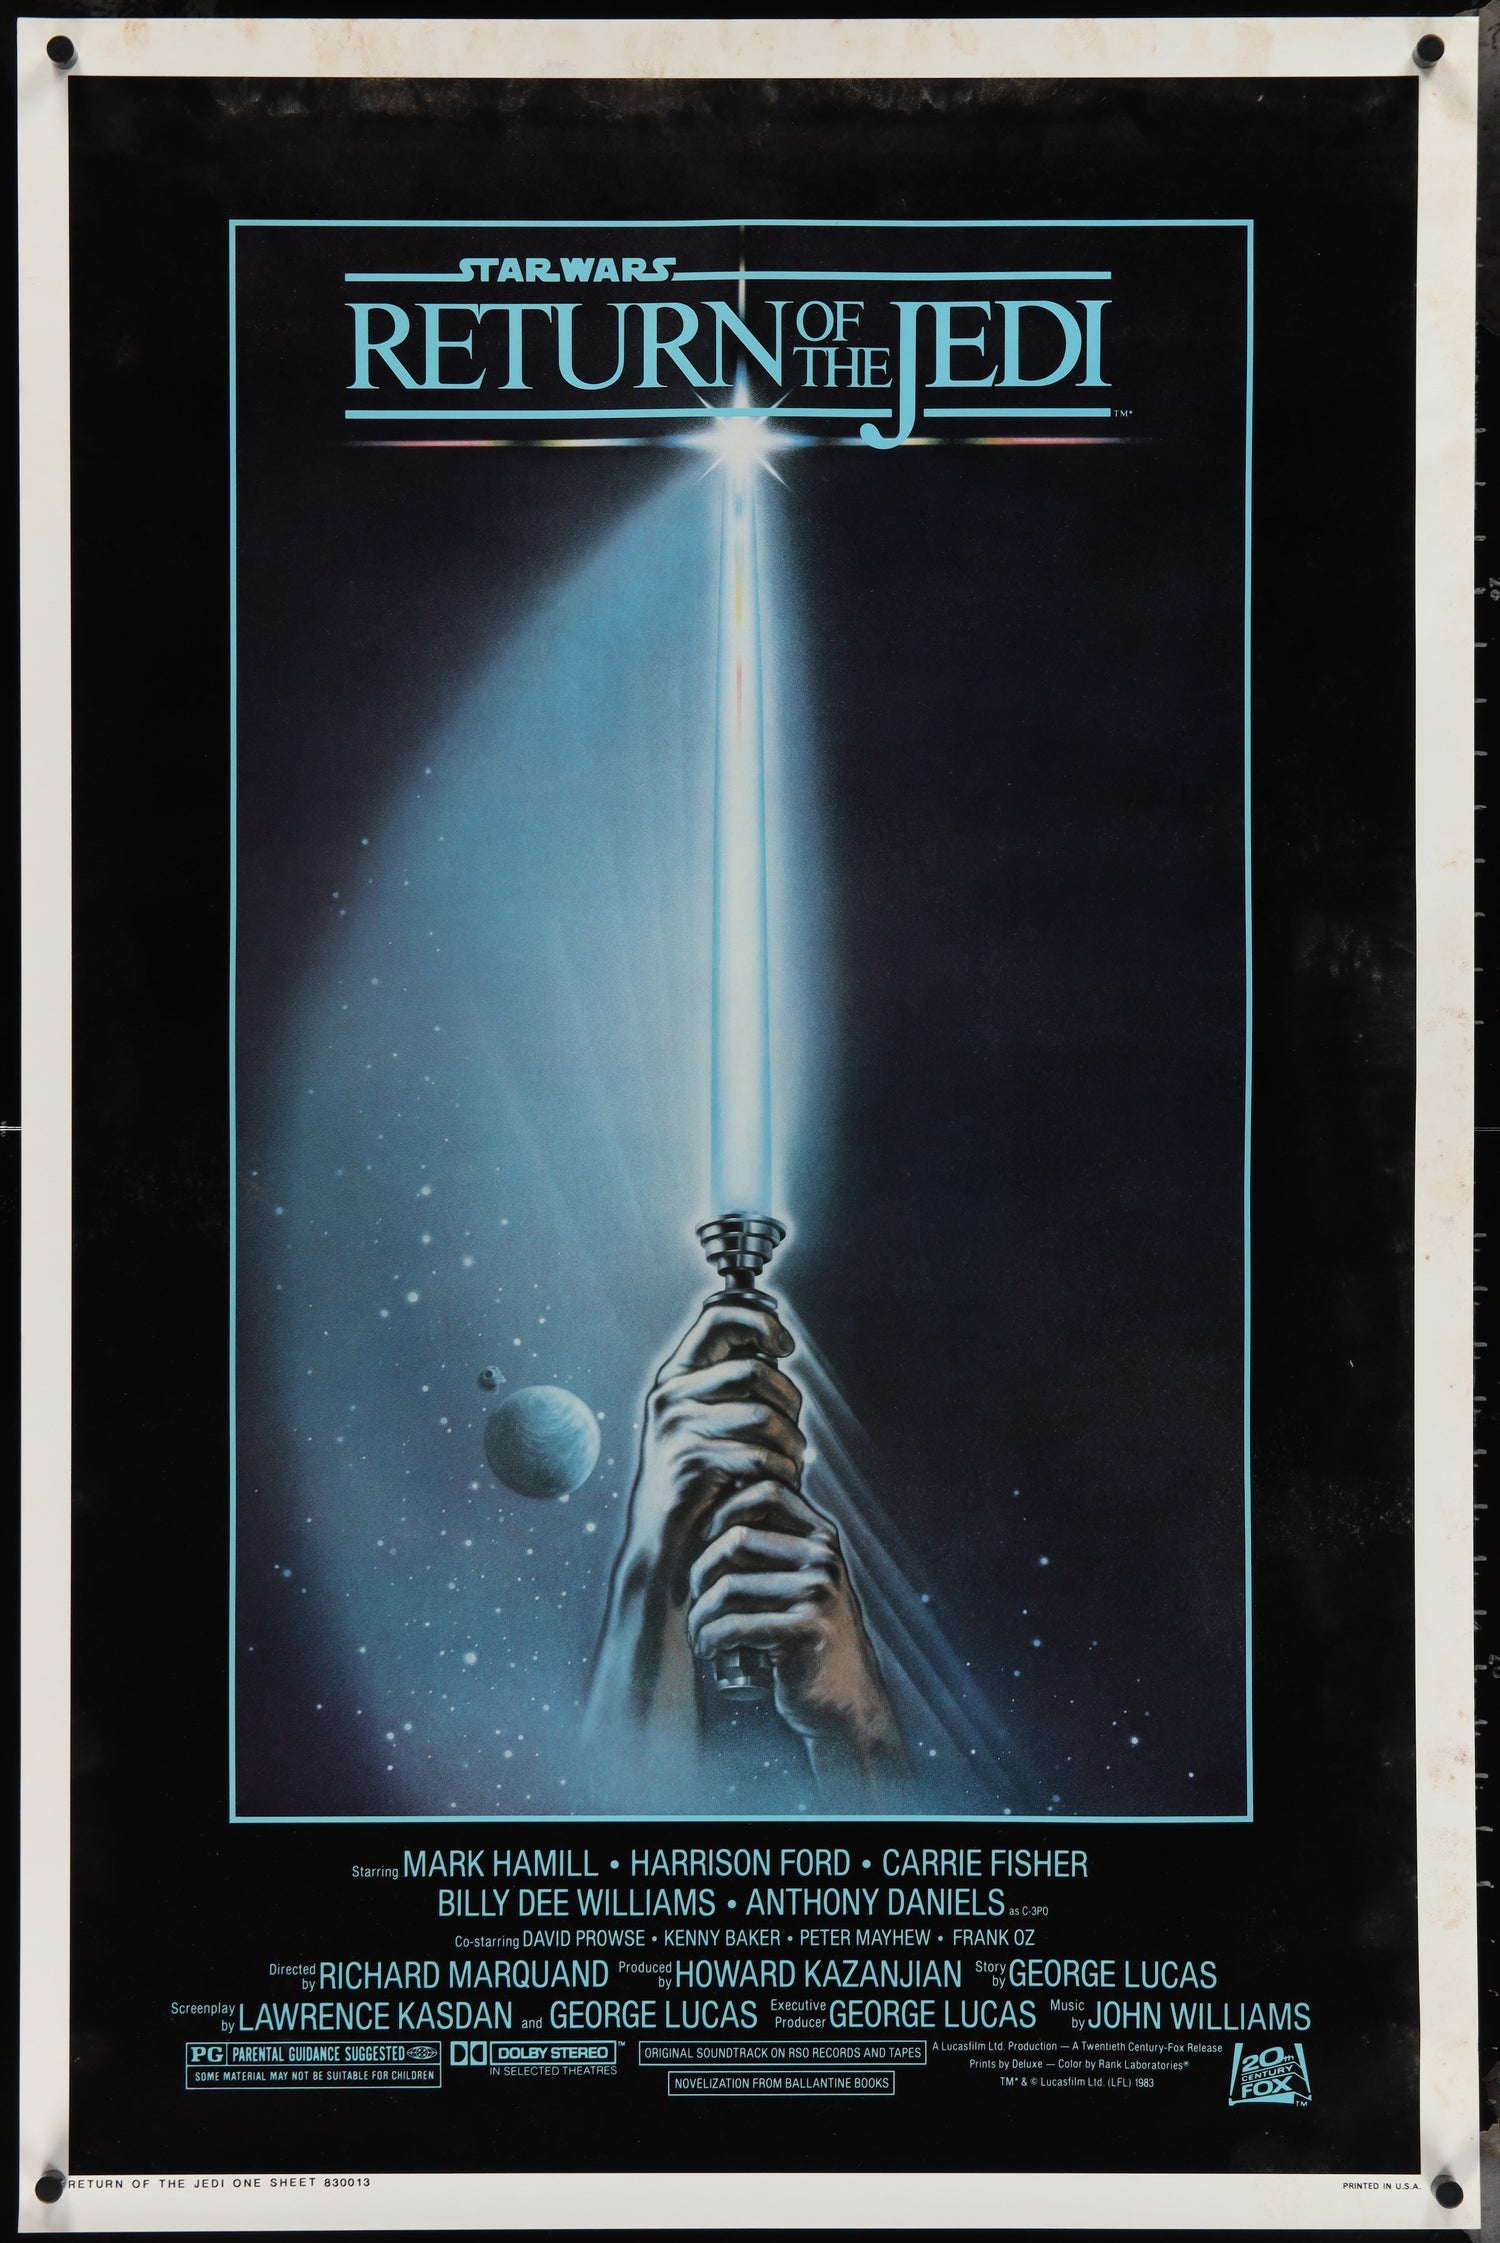 Original Vintage Star Wars Movie Posters